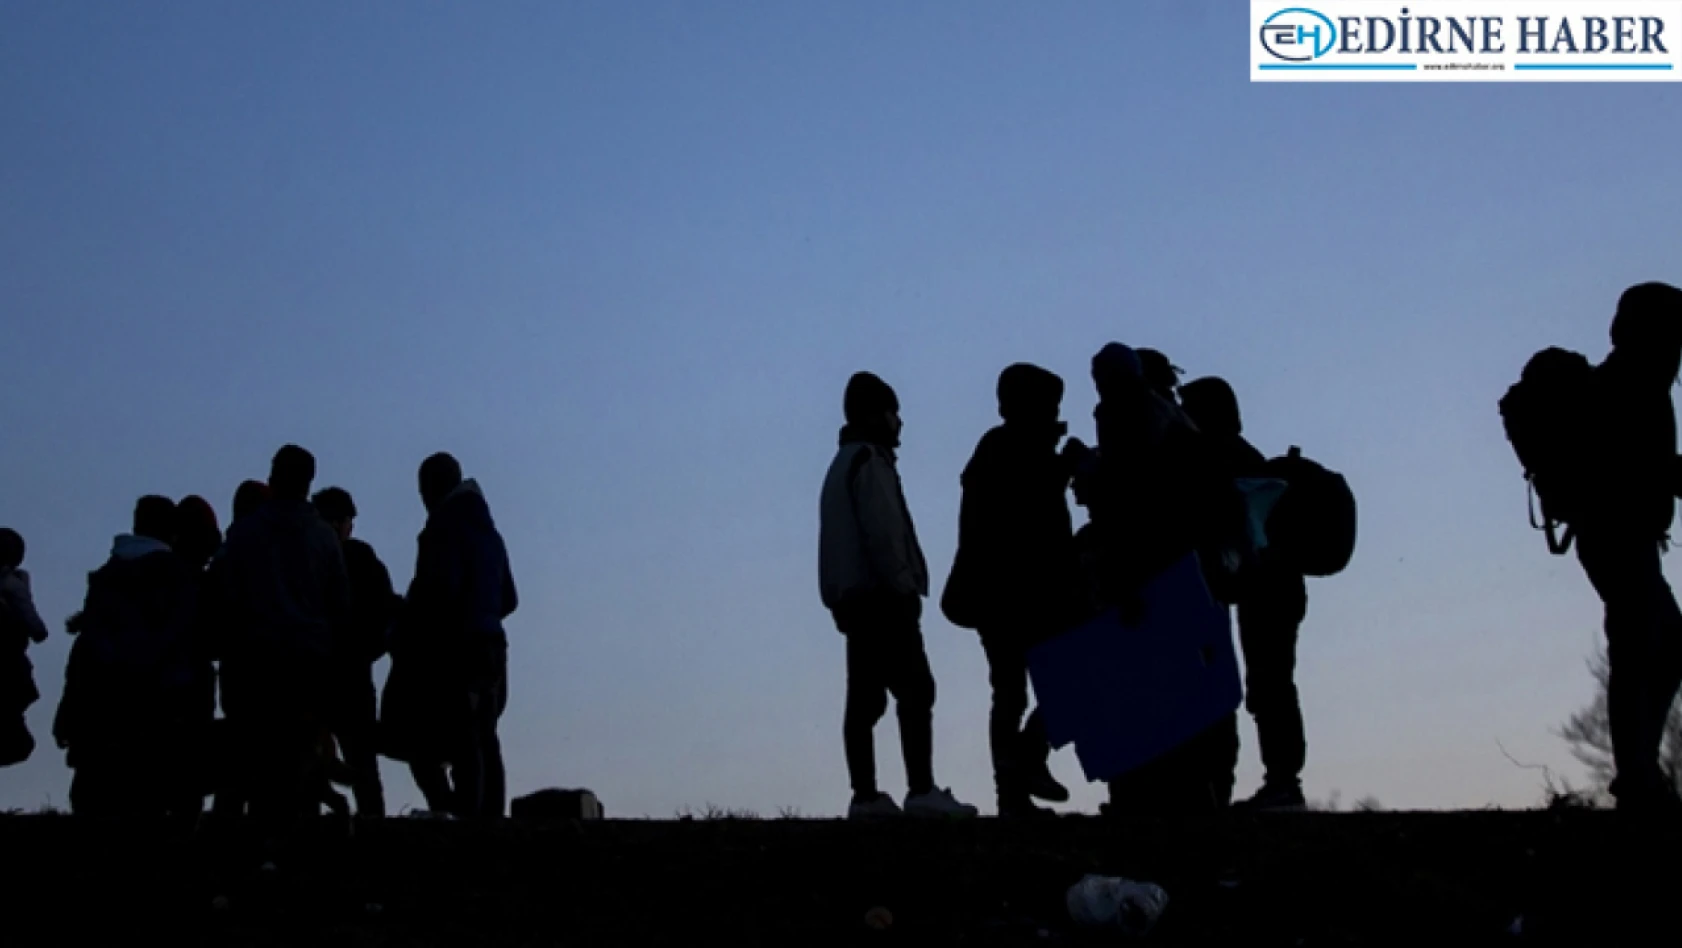 Edirne'de 68 düzensiz göçmen yakalandı